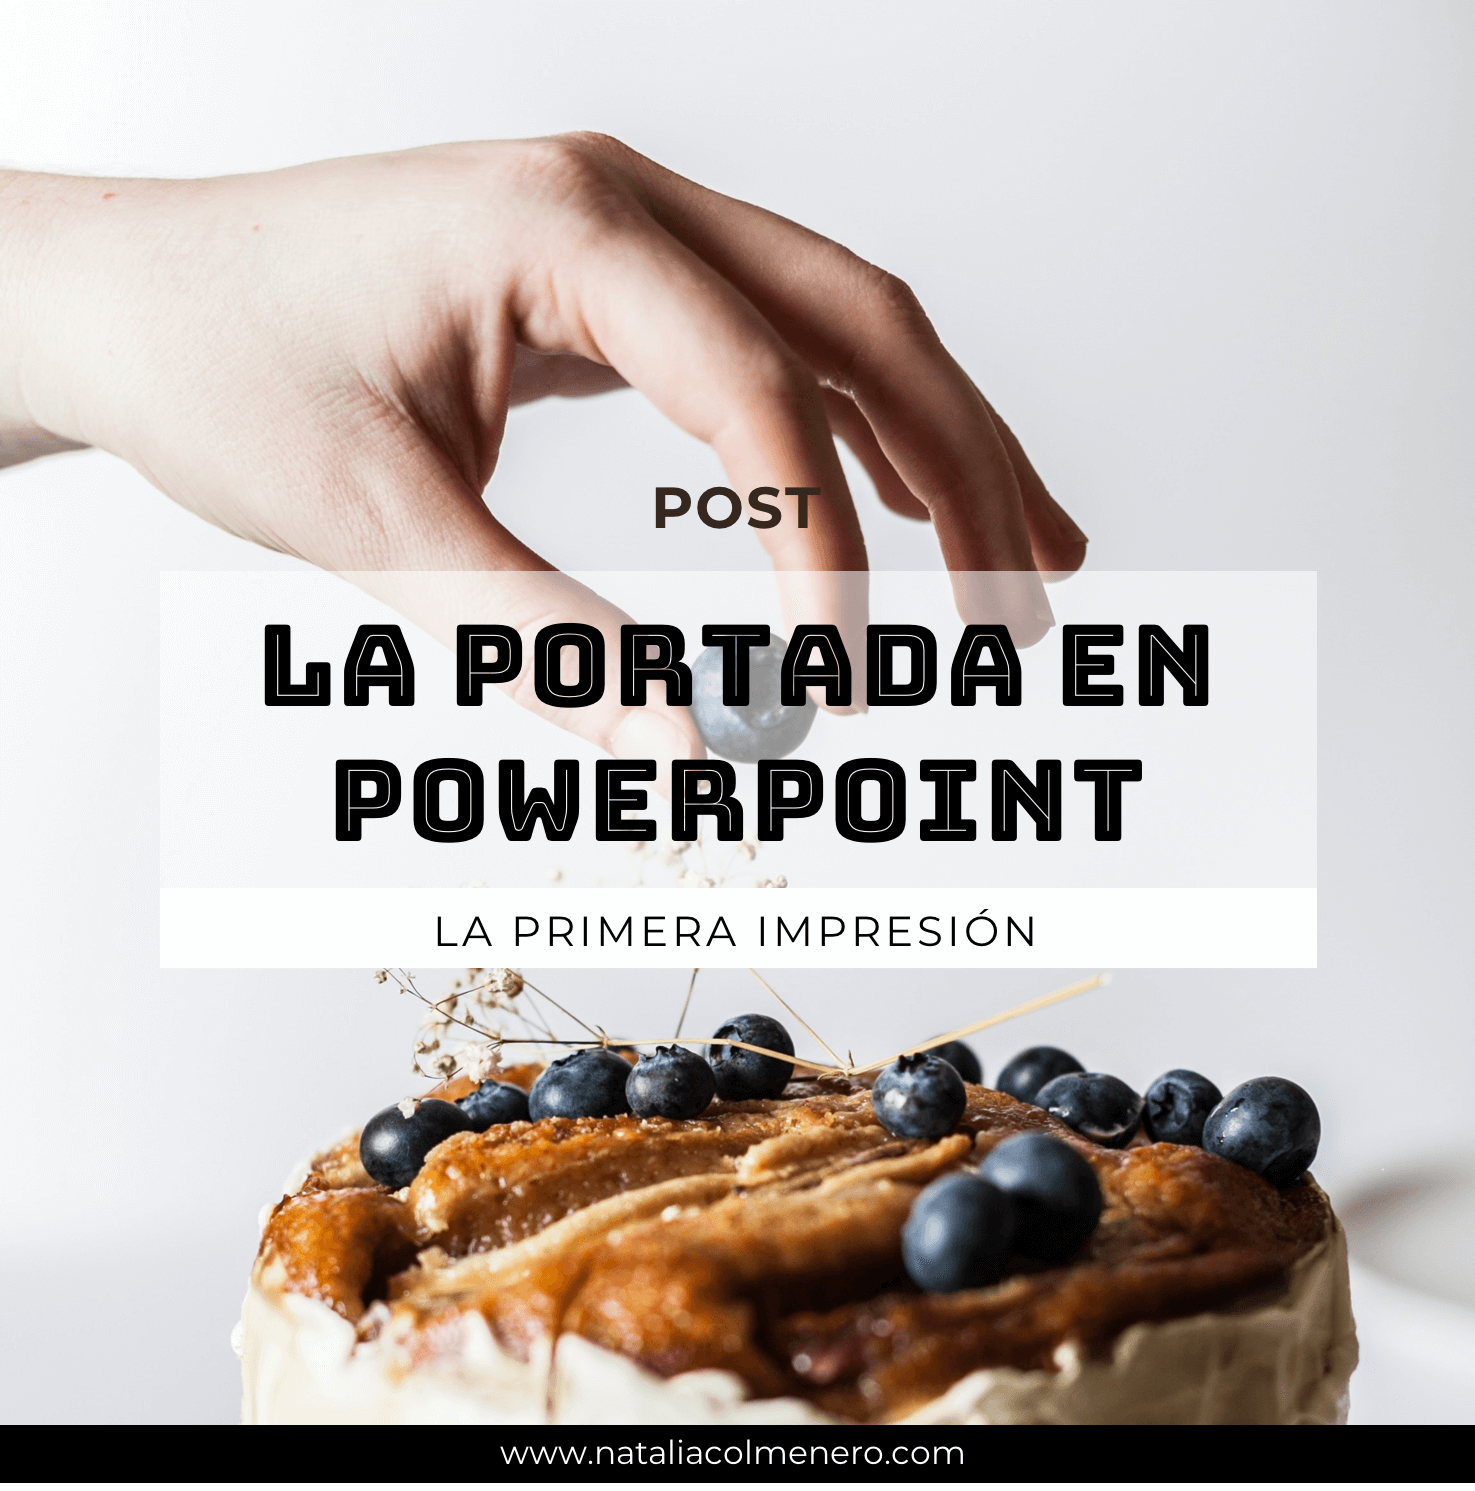 La portada de PowerPoint; la primera impresión. By Natalia Colmenero